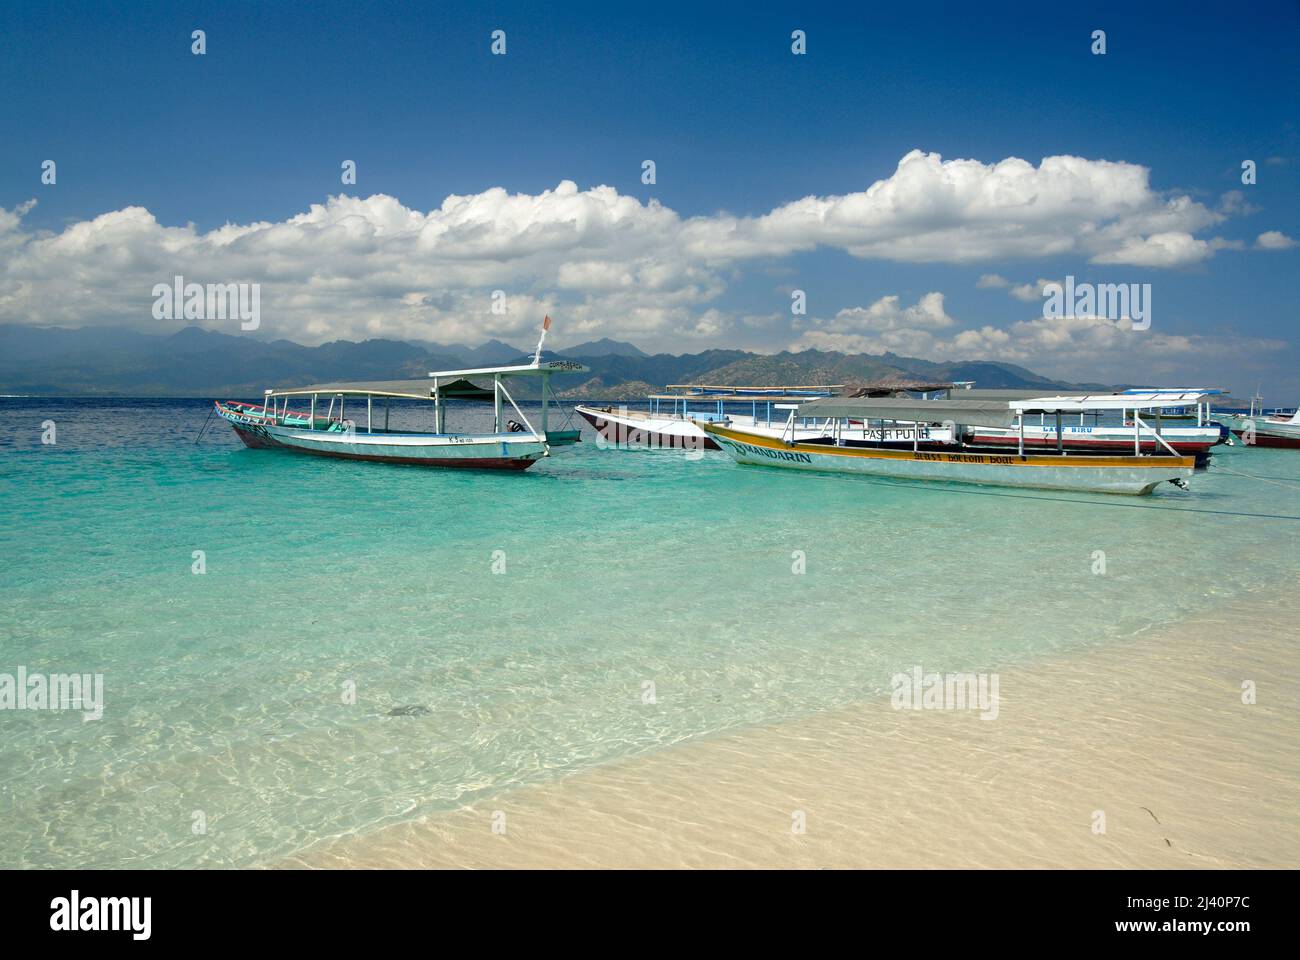 Los barcos utilizados principalmente para transbordar a la gente entre Gili Trawangan y Lombok están amarrados cerca de la playa. Lombok está a la distancia. Foto de stock